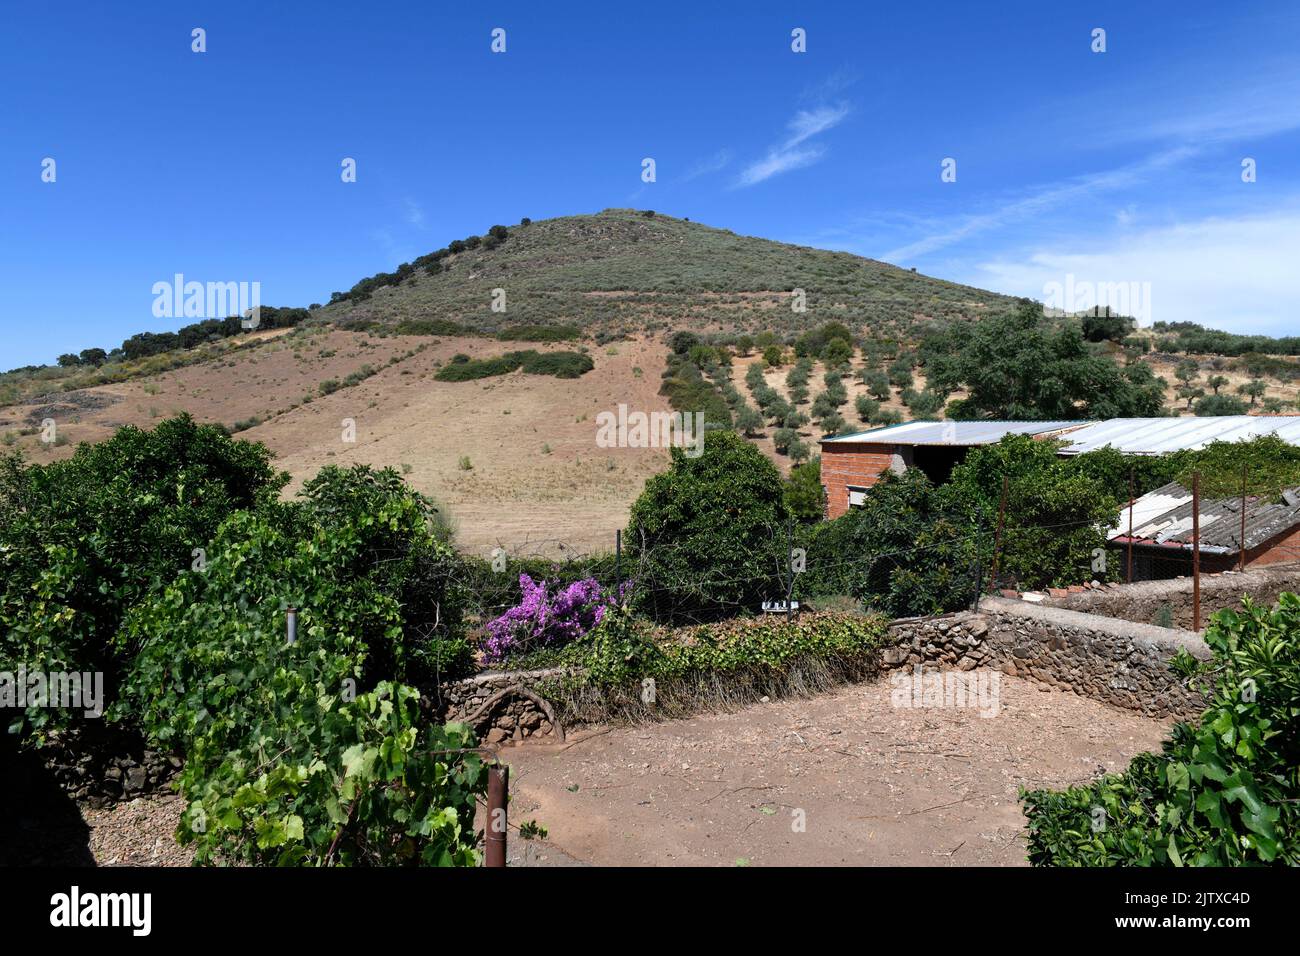 Batolith (cúpula de granito). Esta foto fue tomada en Cerro de San Cristóbal, Logrosan, Cáceres, Extremadura, España. Foto de stock